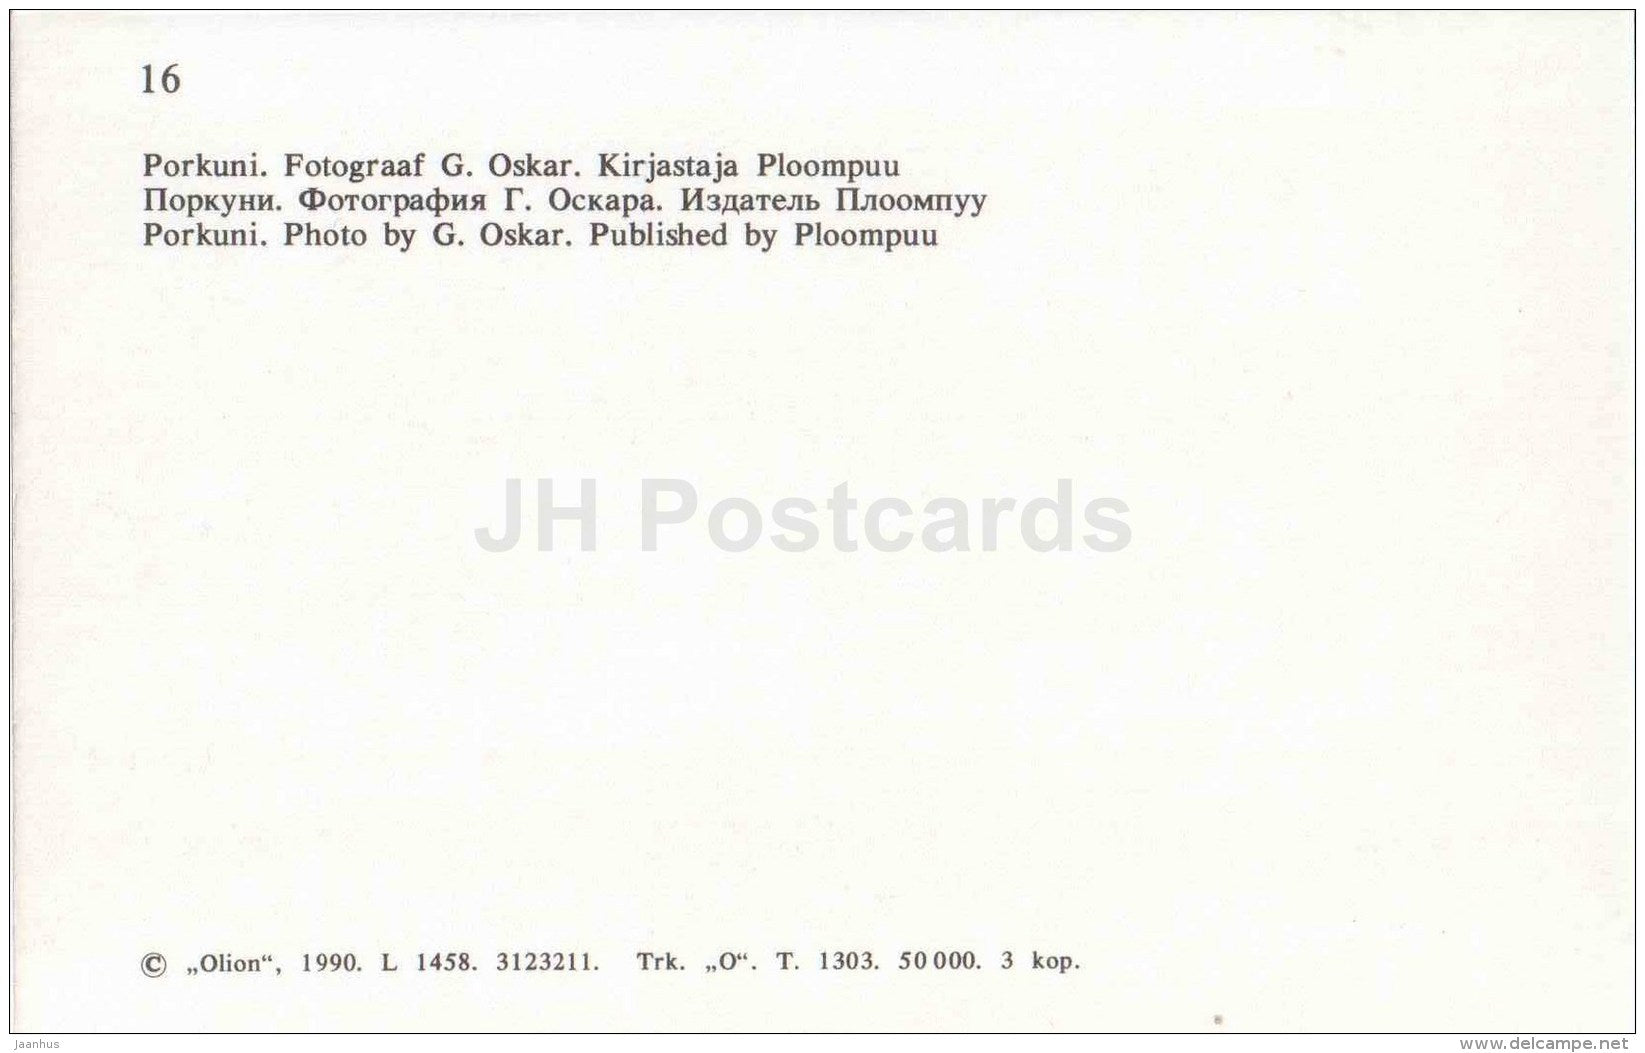 Porkuni - 1 - Virumaa - OLD POSTCARD REPRODUCTION! - 1990 - Estonia USSR - unused - JH Postcards